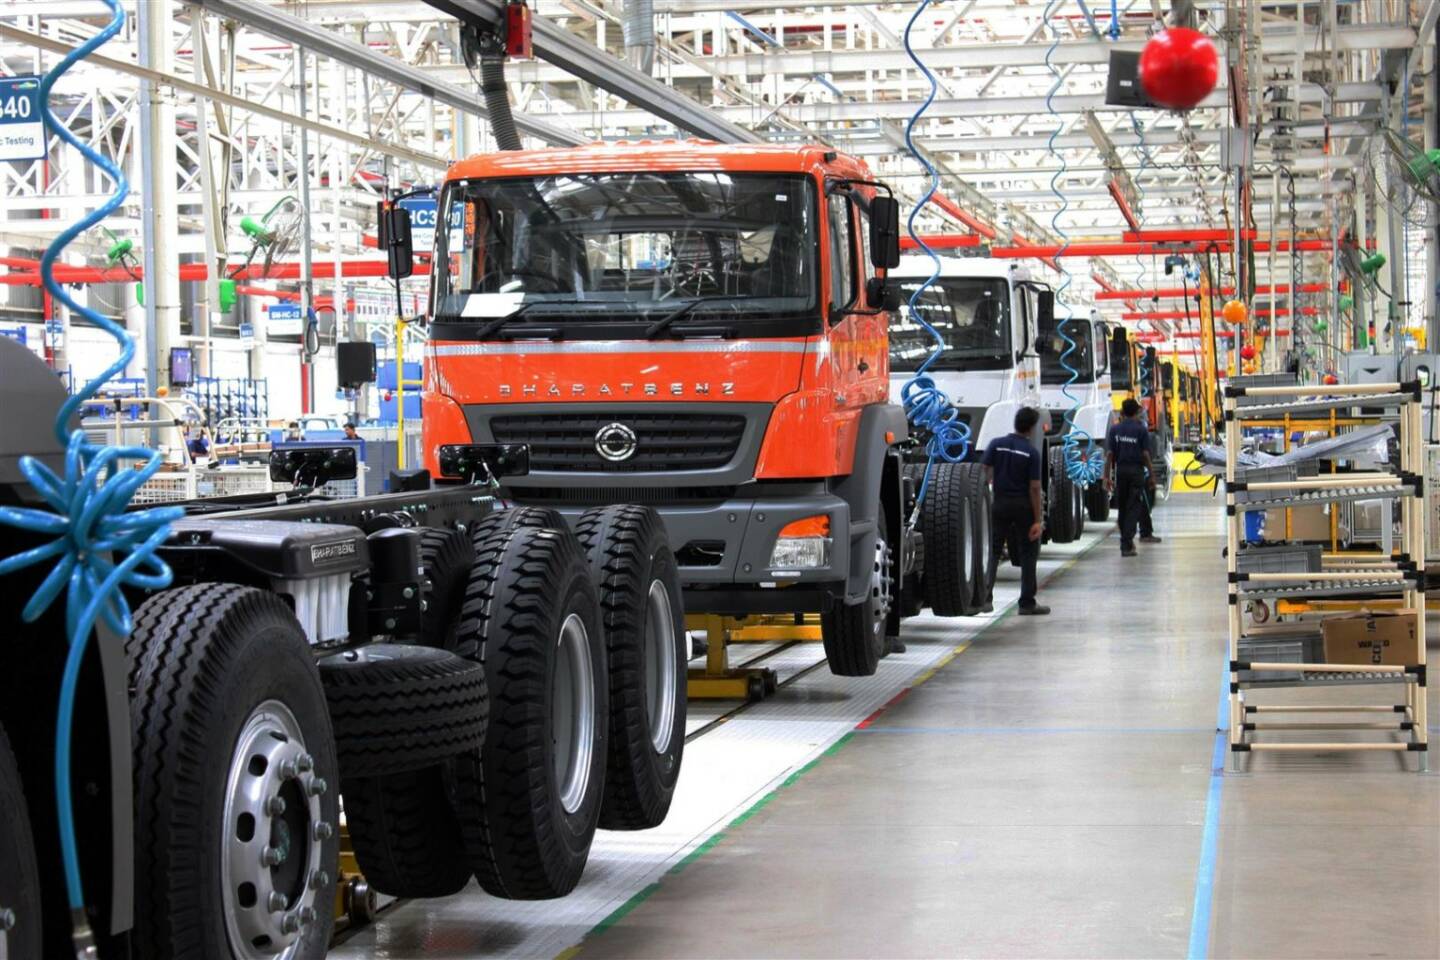 Daimler Trucks mit Verkaufserfolg in Indien: 10.000 BharatBenz Lkw abgesetzt, Absatz steigt um 67% im ersten Quartal 2014, im März erstmals 1.000 Fahrzeuge in einem Monat verkauft, Marktanteil auf über 5% ausgebaut (Bild: Daimler)